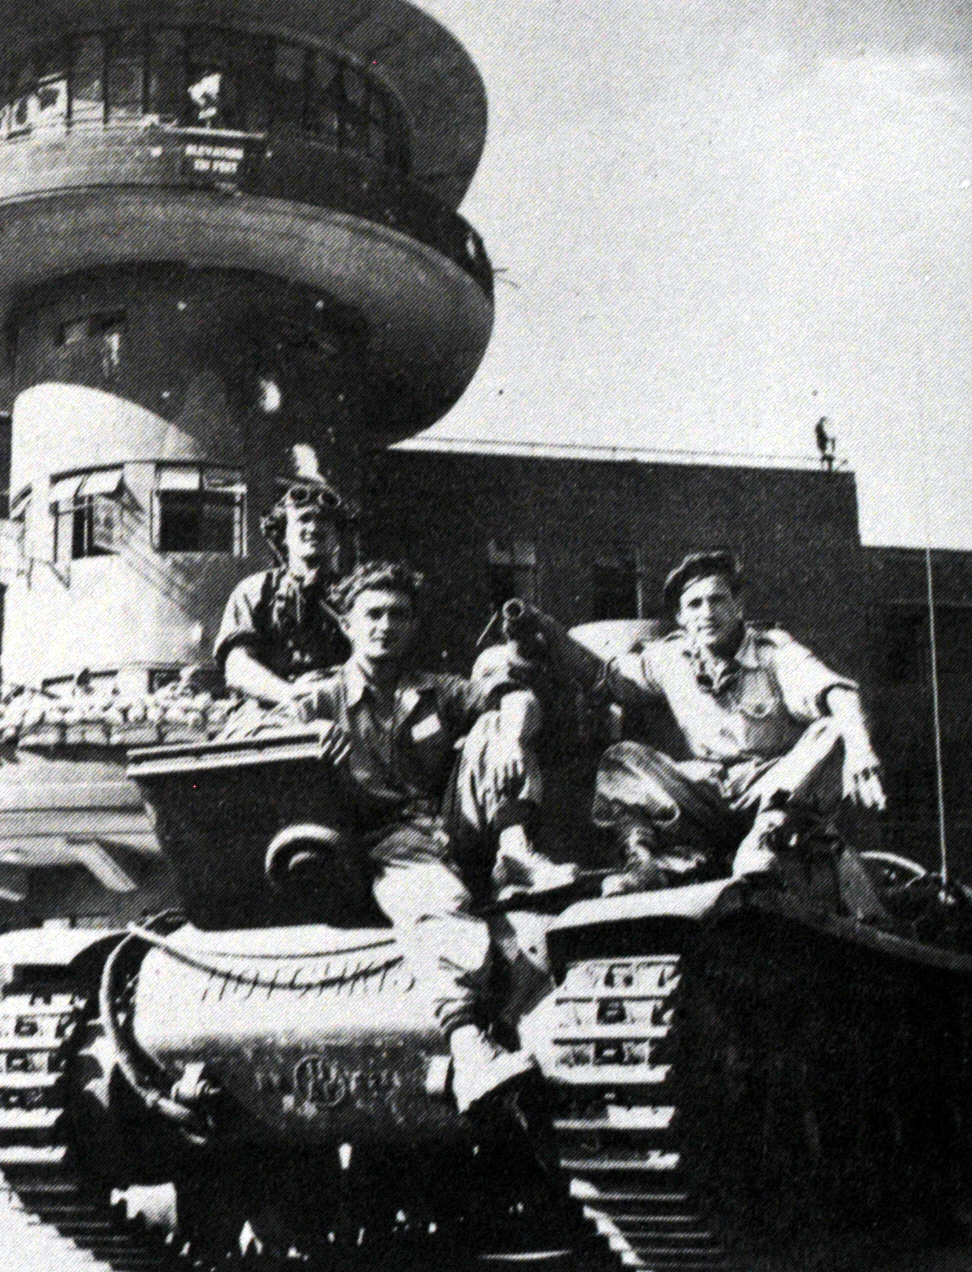 טנק הוצ'קיס וצוותו לאחר כיבוש שדה התעופה לוד ע"י גדוד 82. משמאל, הצטרף לצילום אחד מאנשי הצוות של טנק הקרומוול מספר 457 מפלוגה ד'